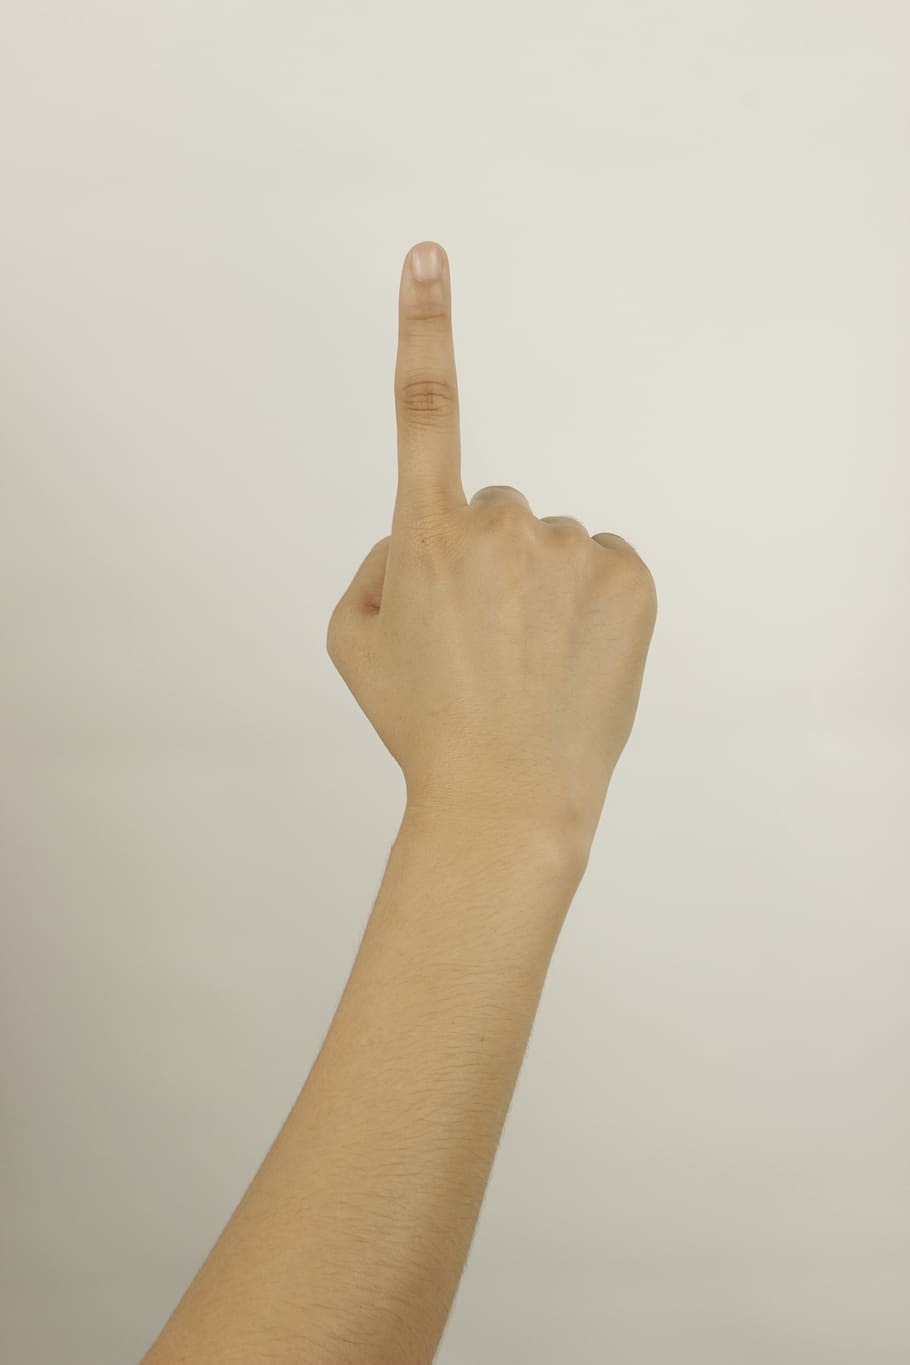 右の人, 人差し指, 手, 指, ジェスチャー, 人間の手, 人間の指, 親指, 人, 記号